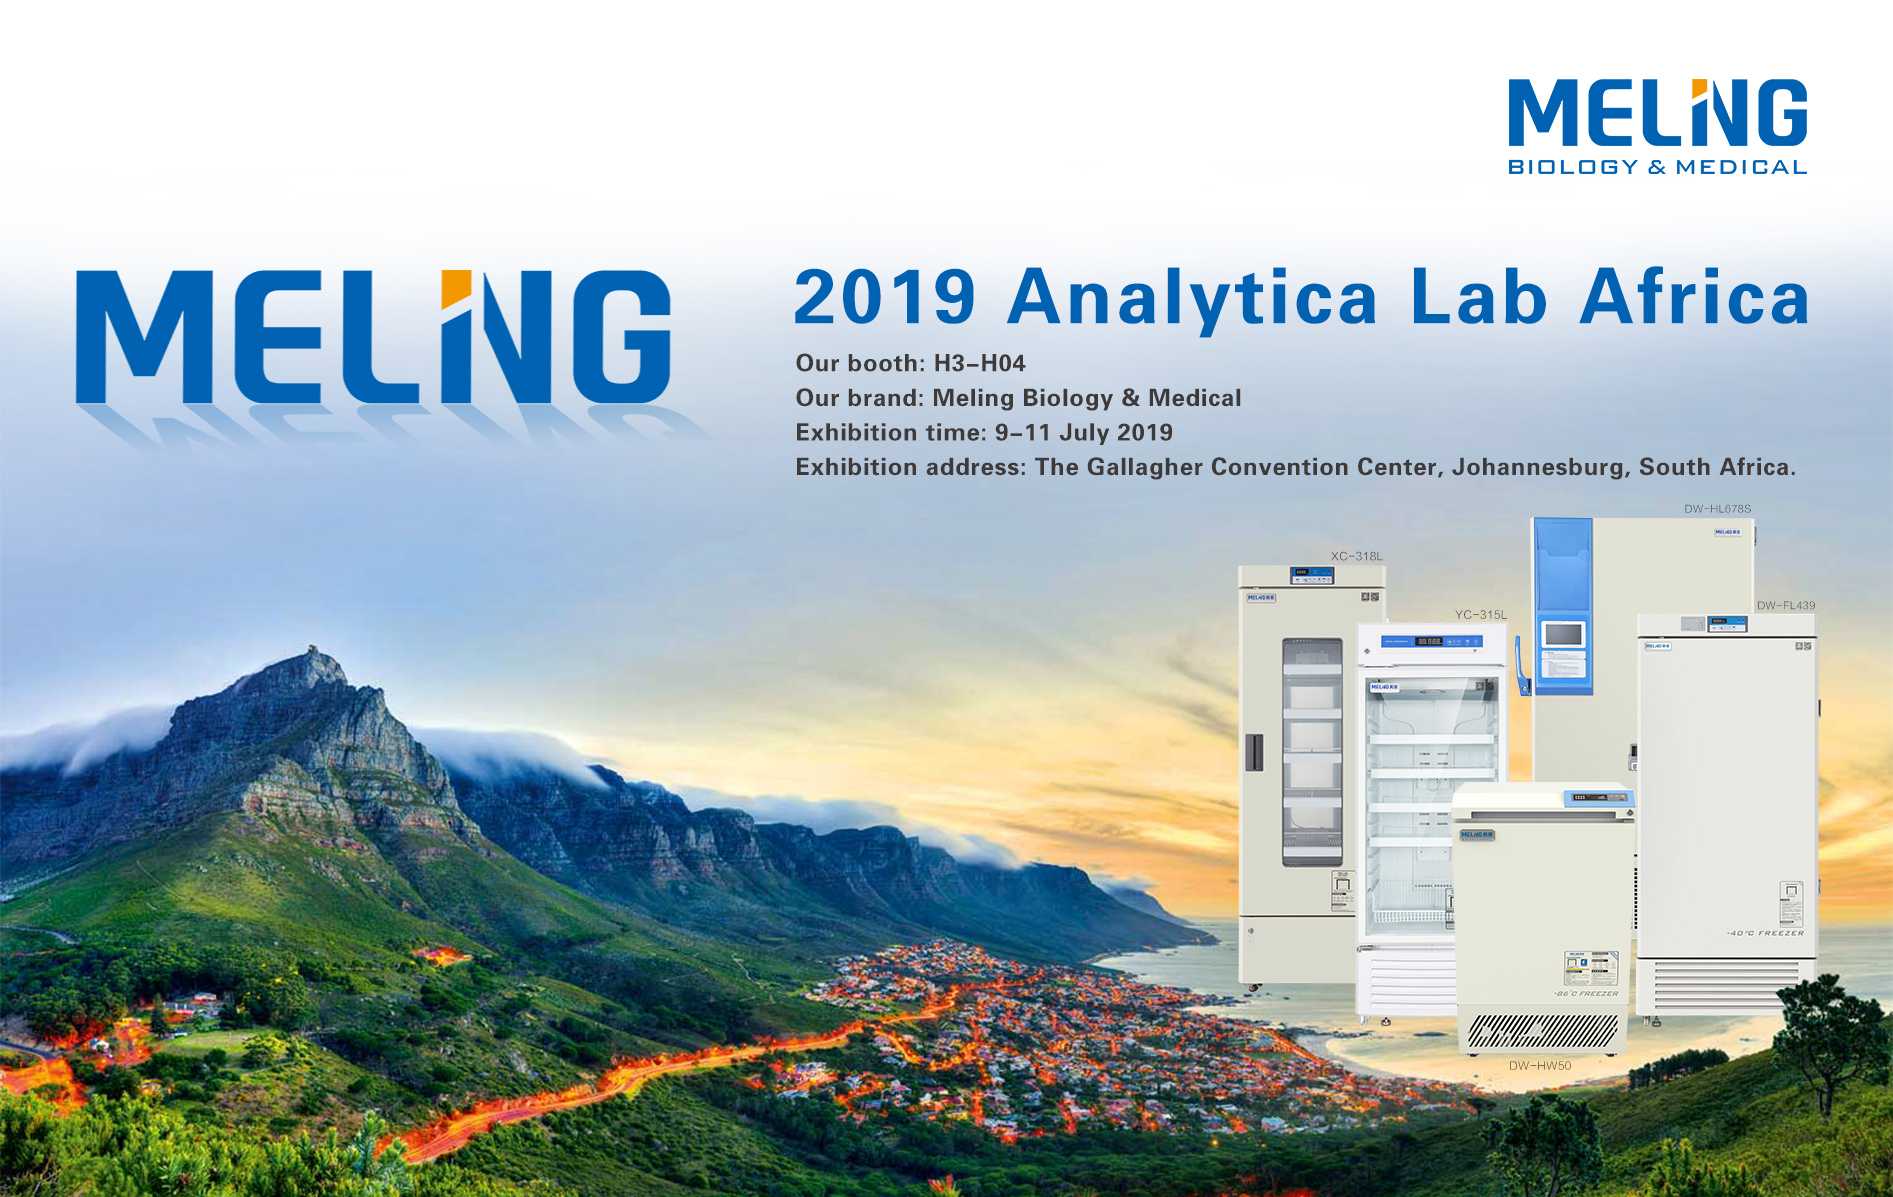 ينتظرك Meling في 2019 Analytica Lab Africa
